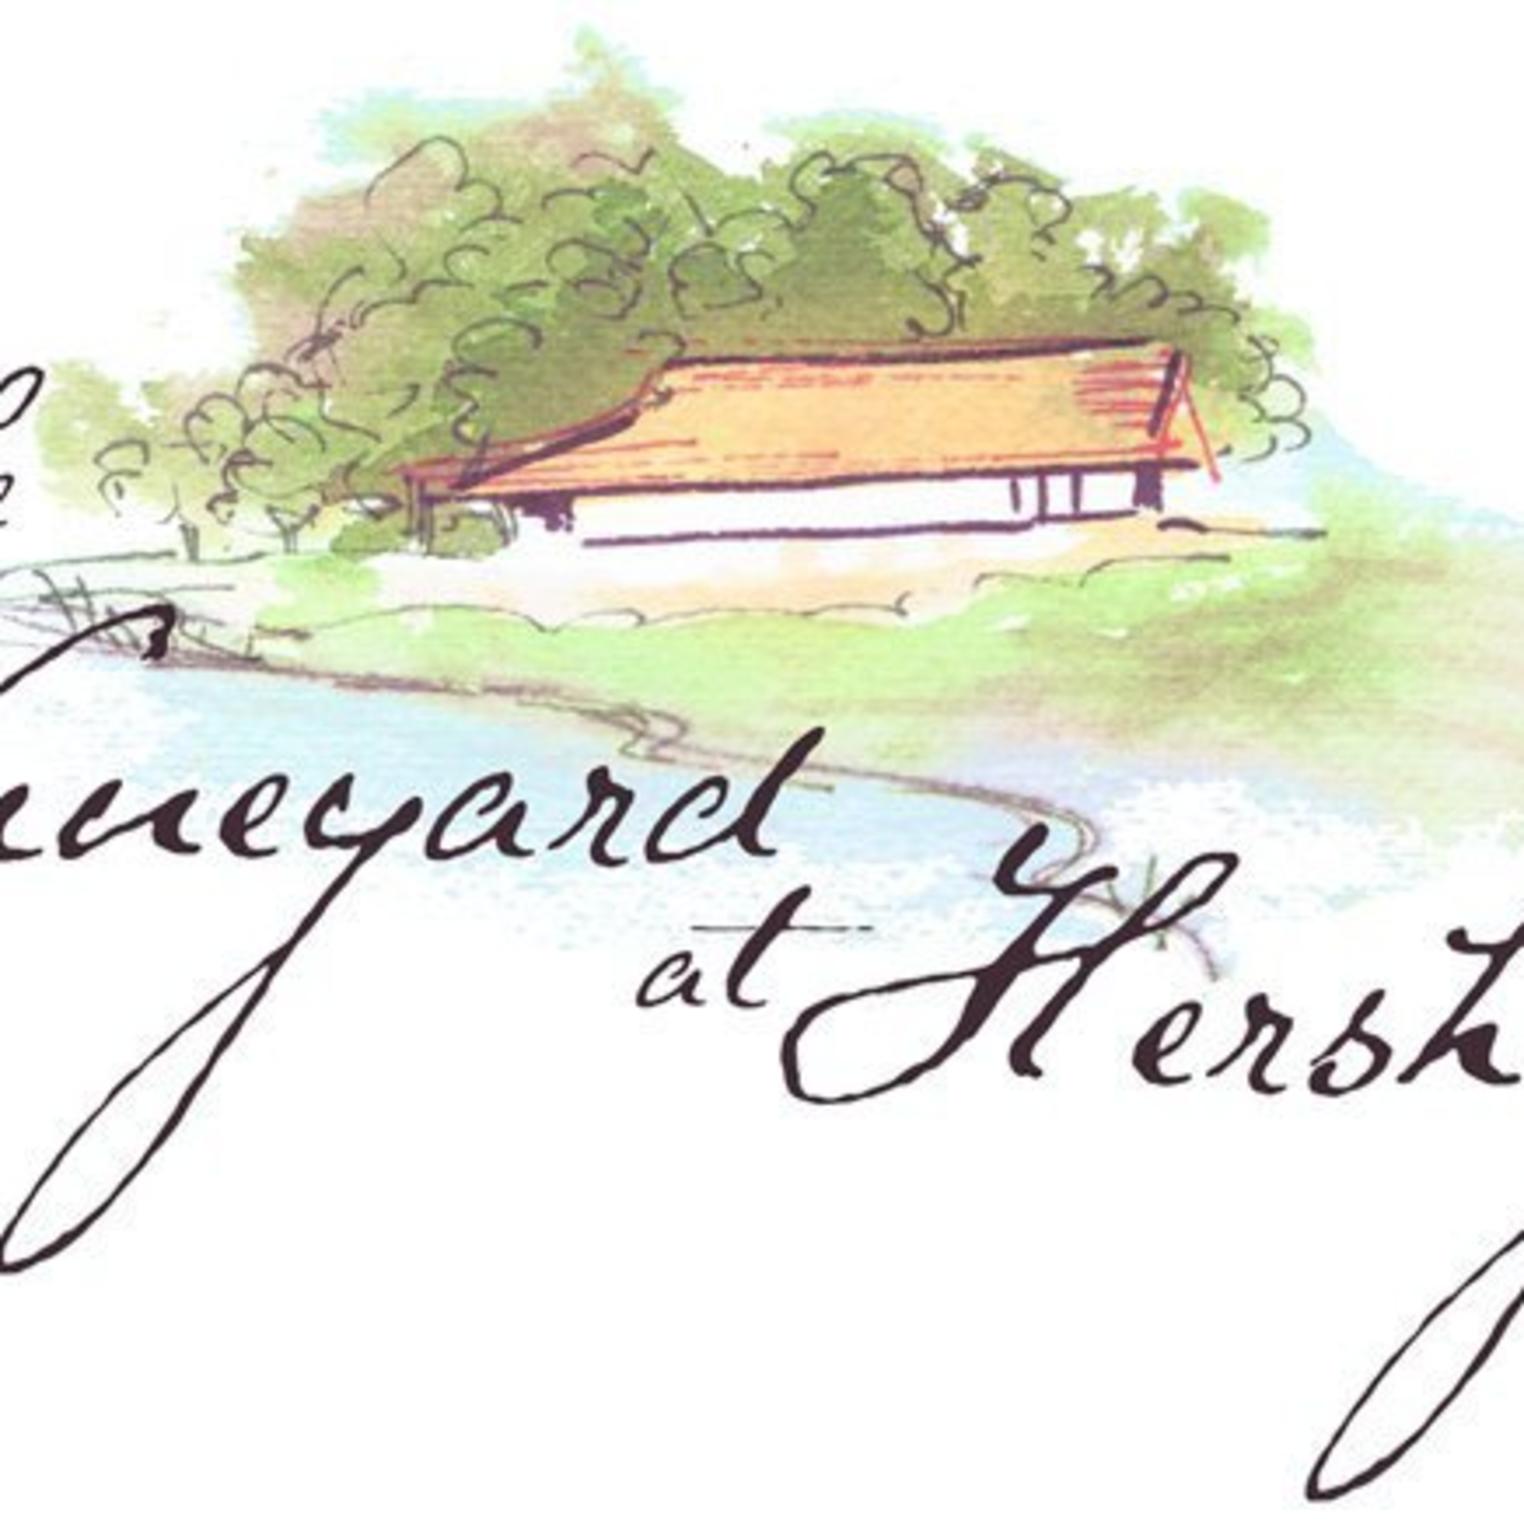 The Vineyard at Hershey